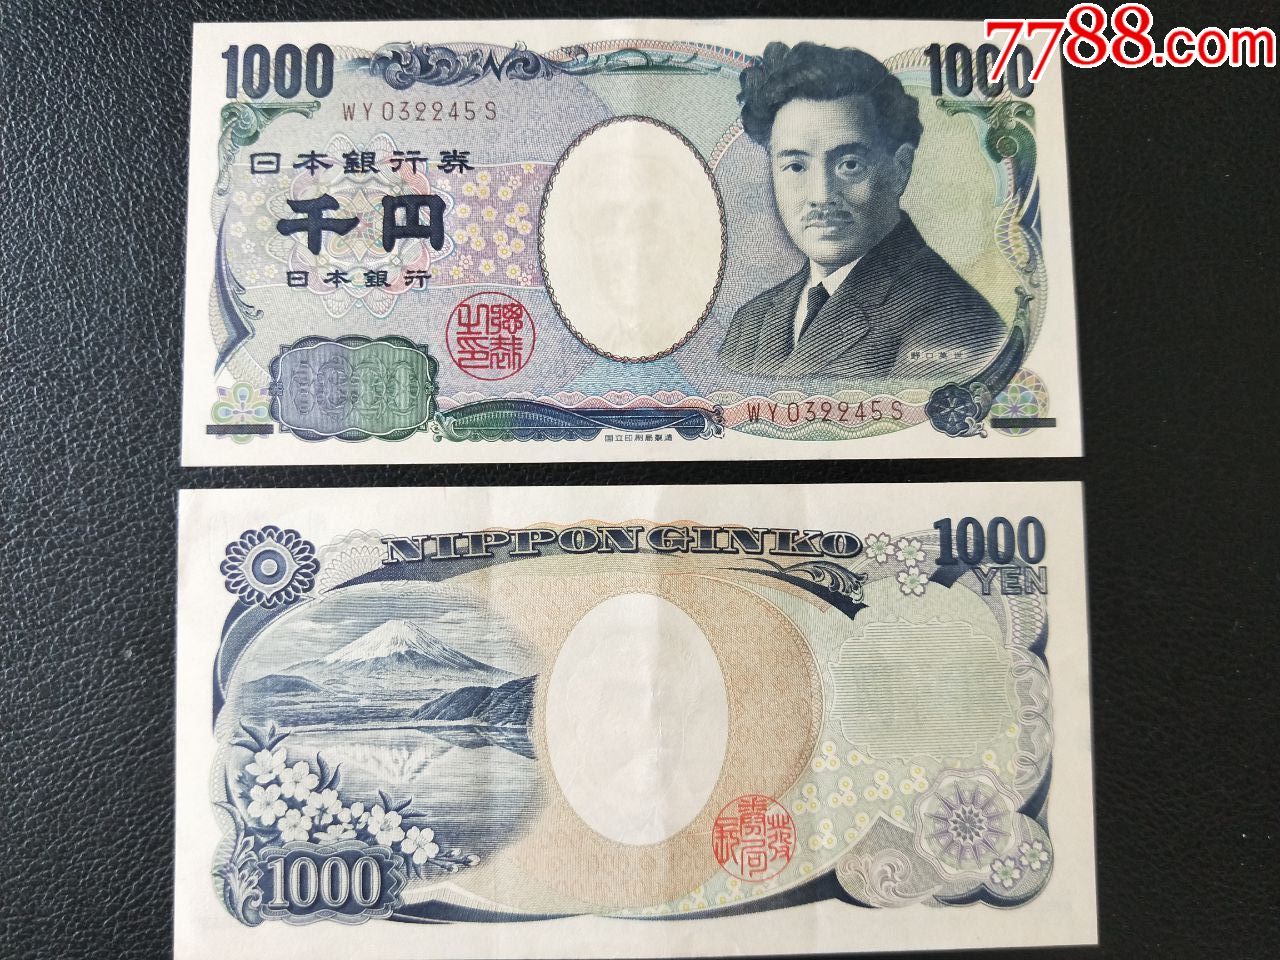 日本货币1000日元钞票 库存图片. 图片 包括有 工资, 国家（地区）, 日本, 横幅提供资金的, 模式 - 143086099